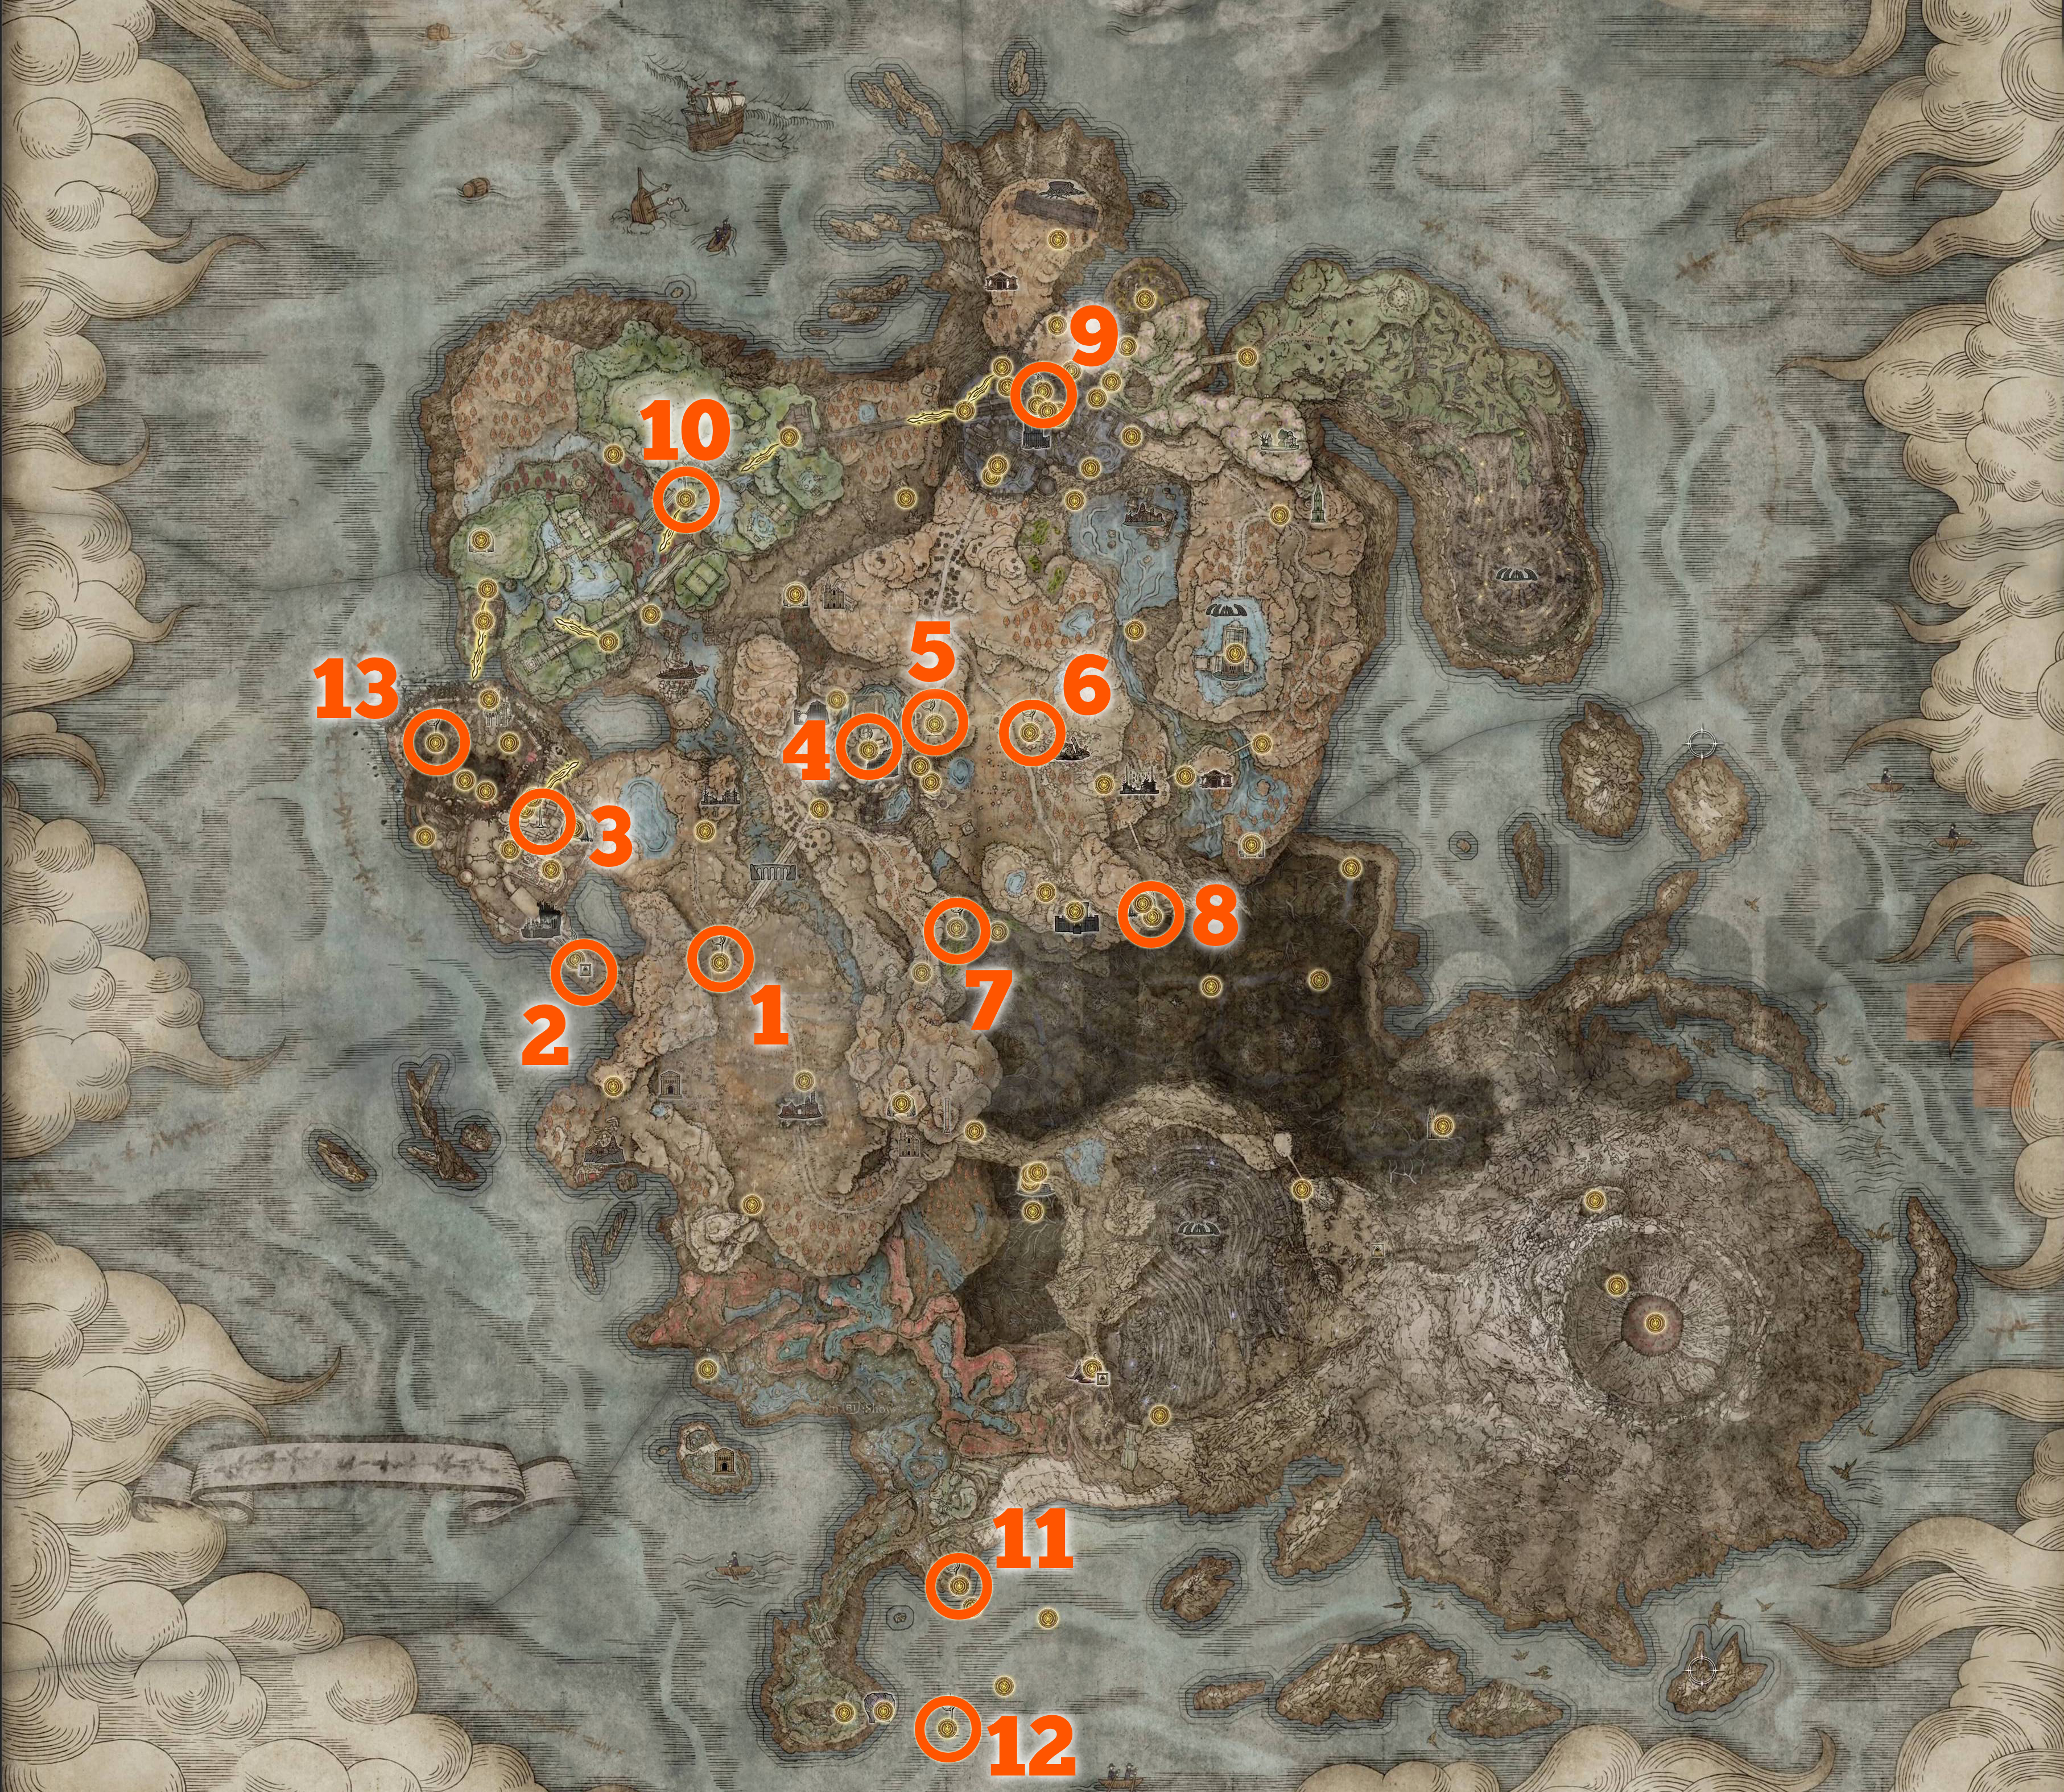 Erdtree'nin Gölgesinde Miquella'nın Haçlarının tümünün yerini gösteren bir harita